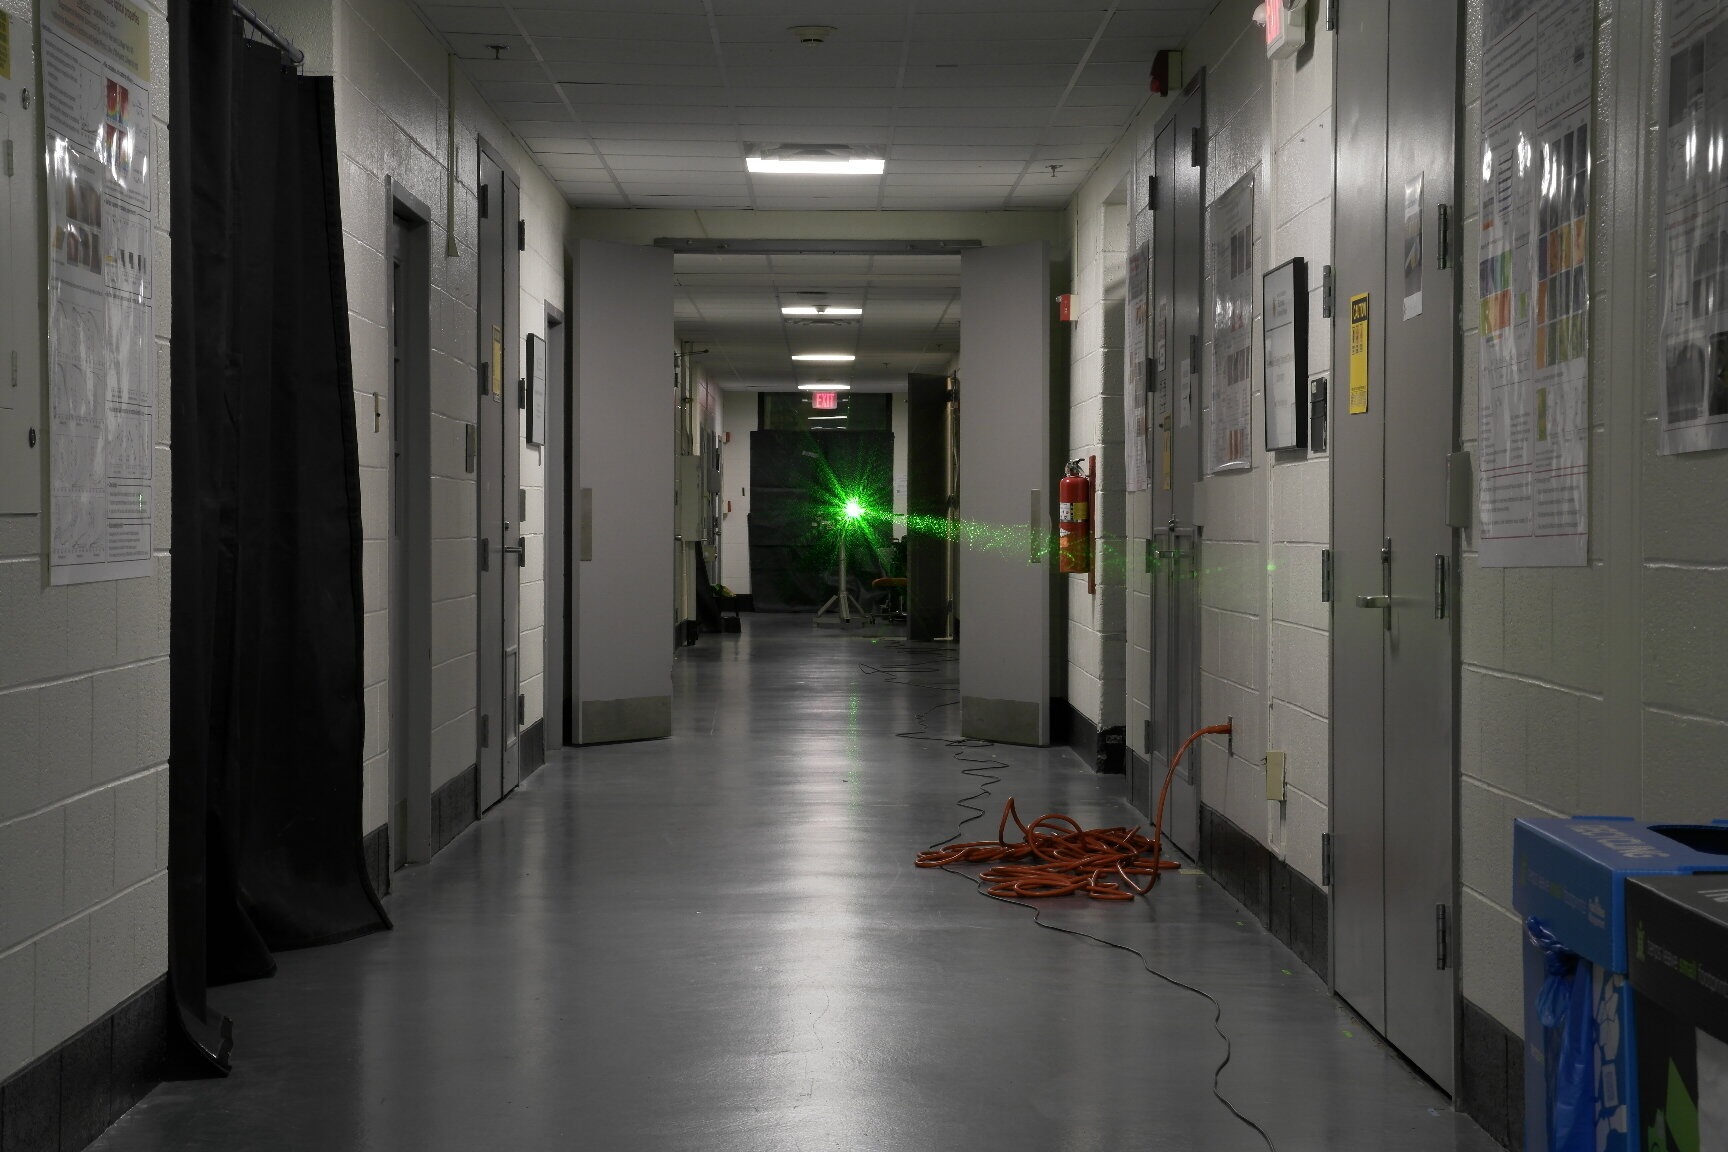 Um experimento com laser de 50 metros estabelece um recorde no corredor da universidade